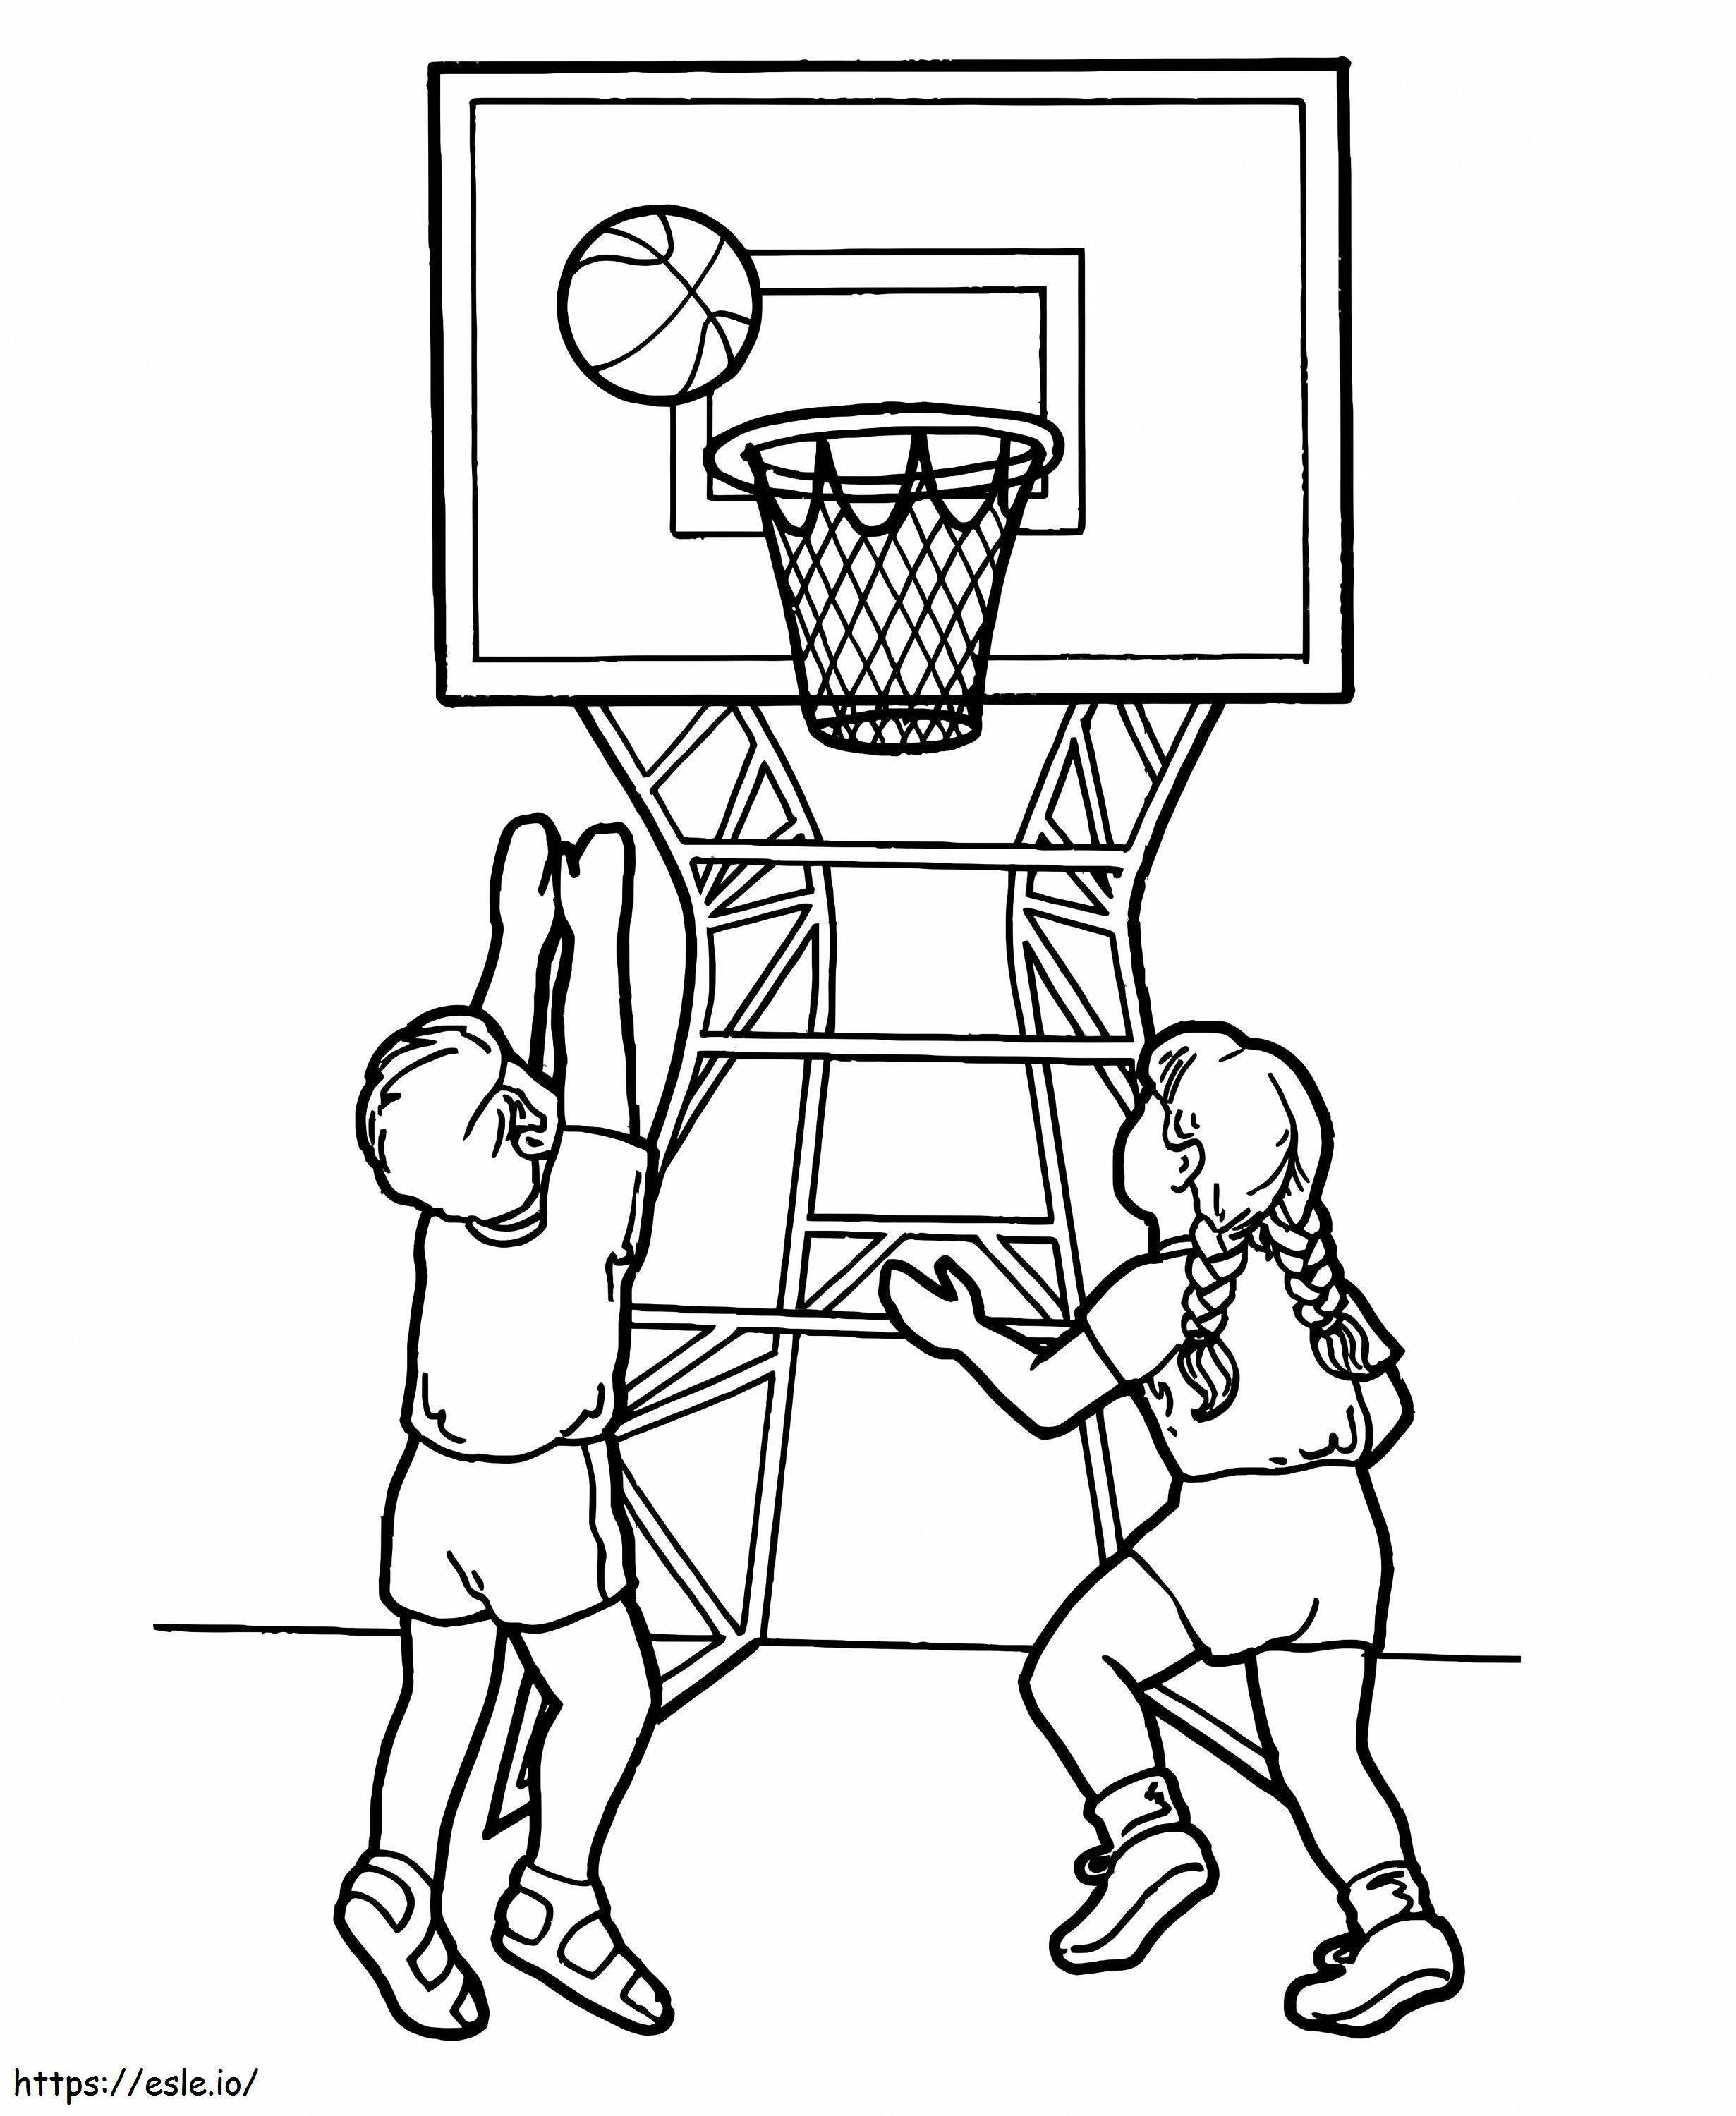 Coloriage Deux enfants jouant au basket à imprimer dessin